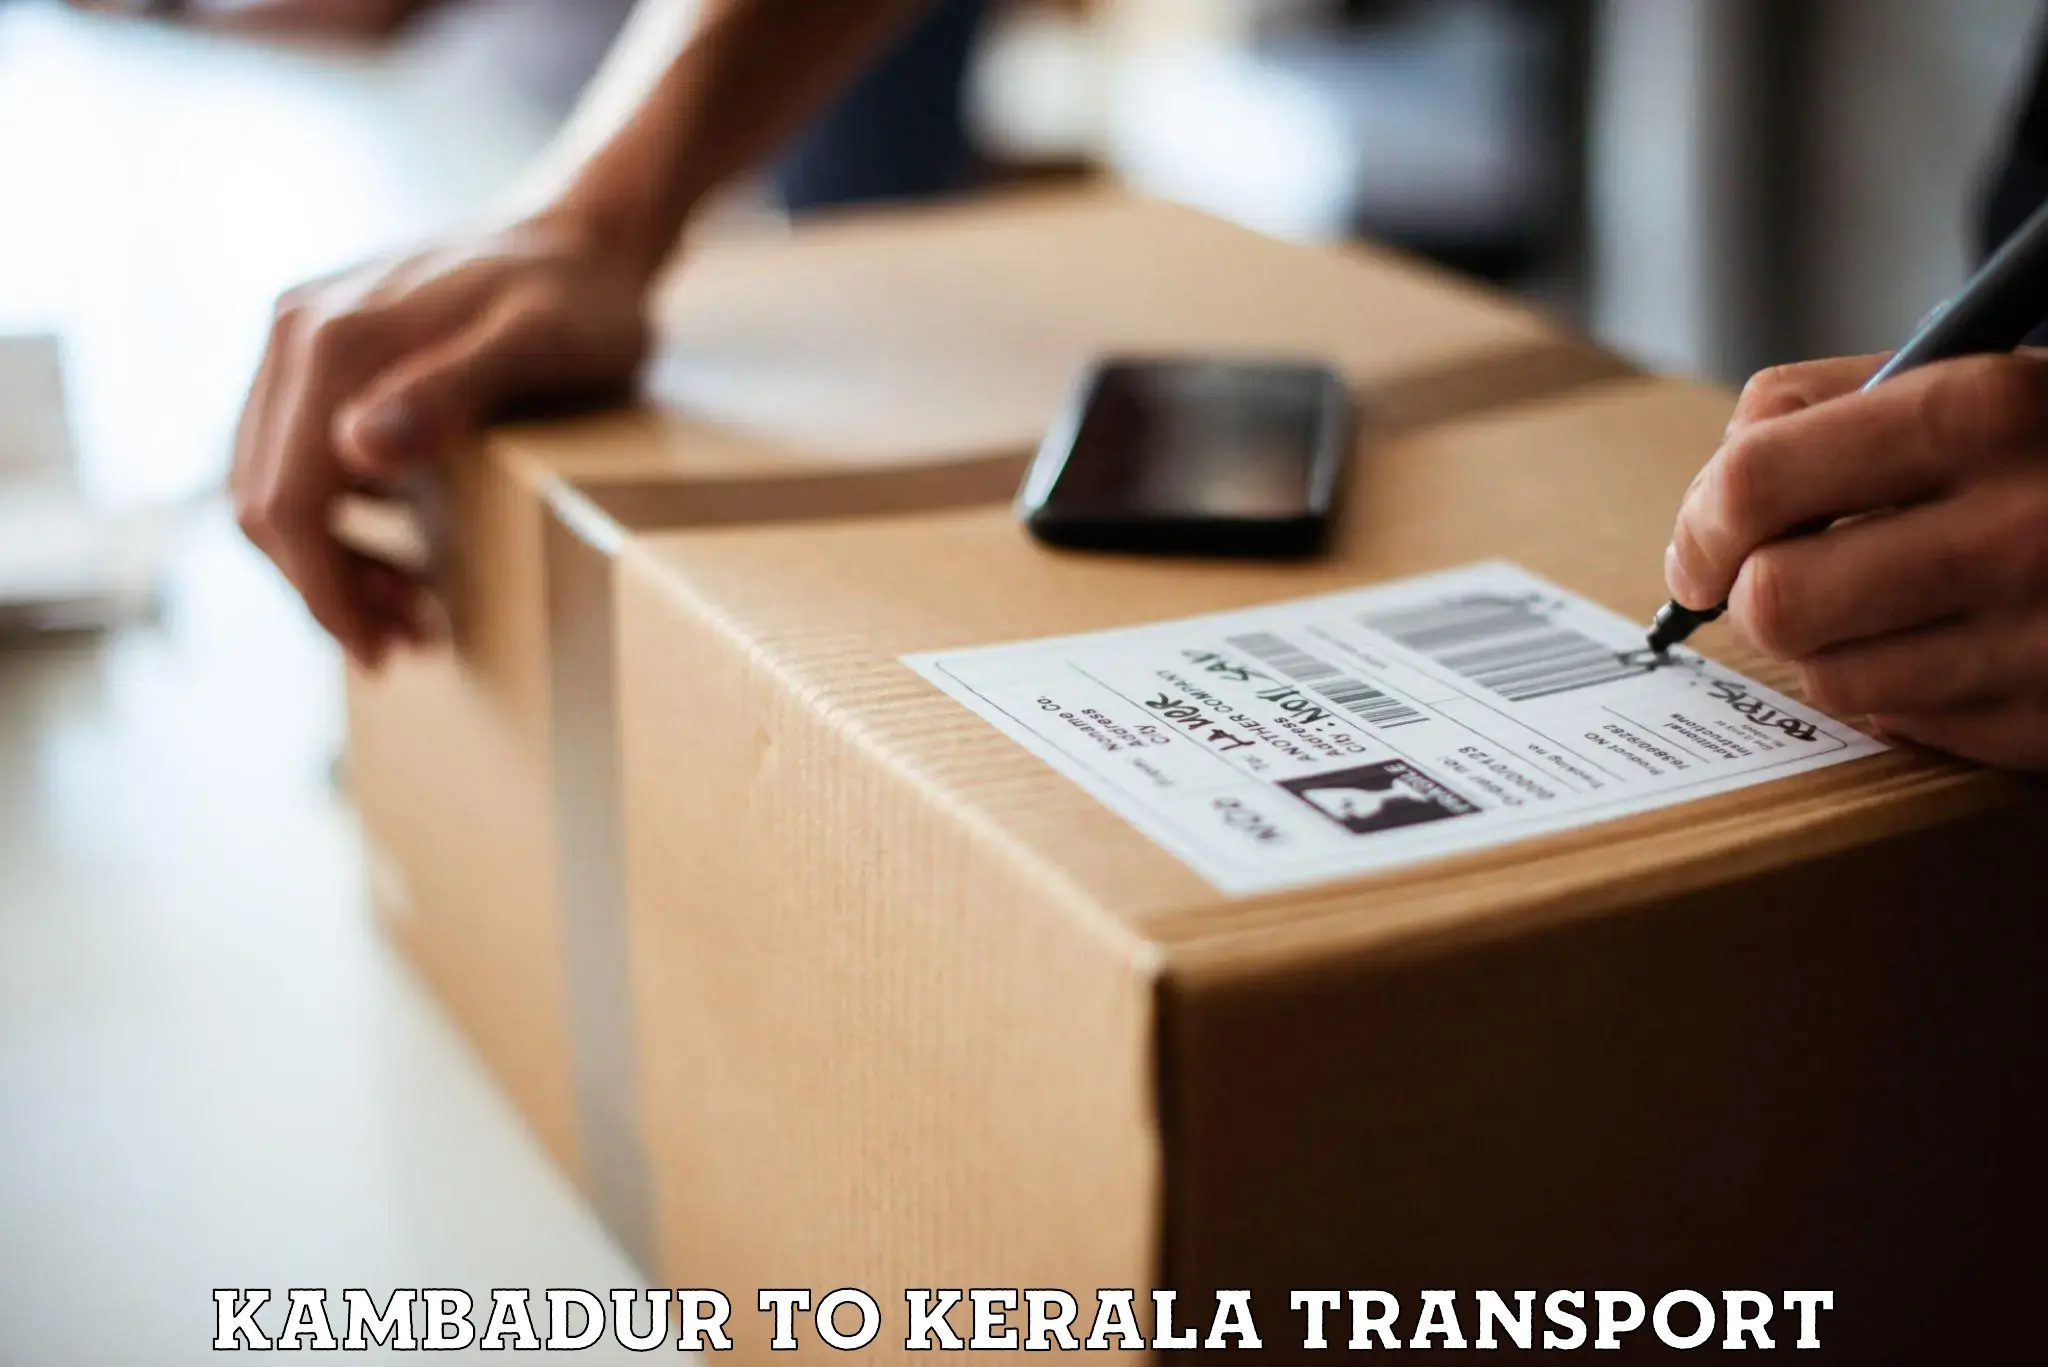 Nearest transport service Kambadur to Kottarakkara